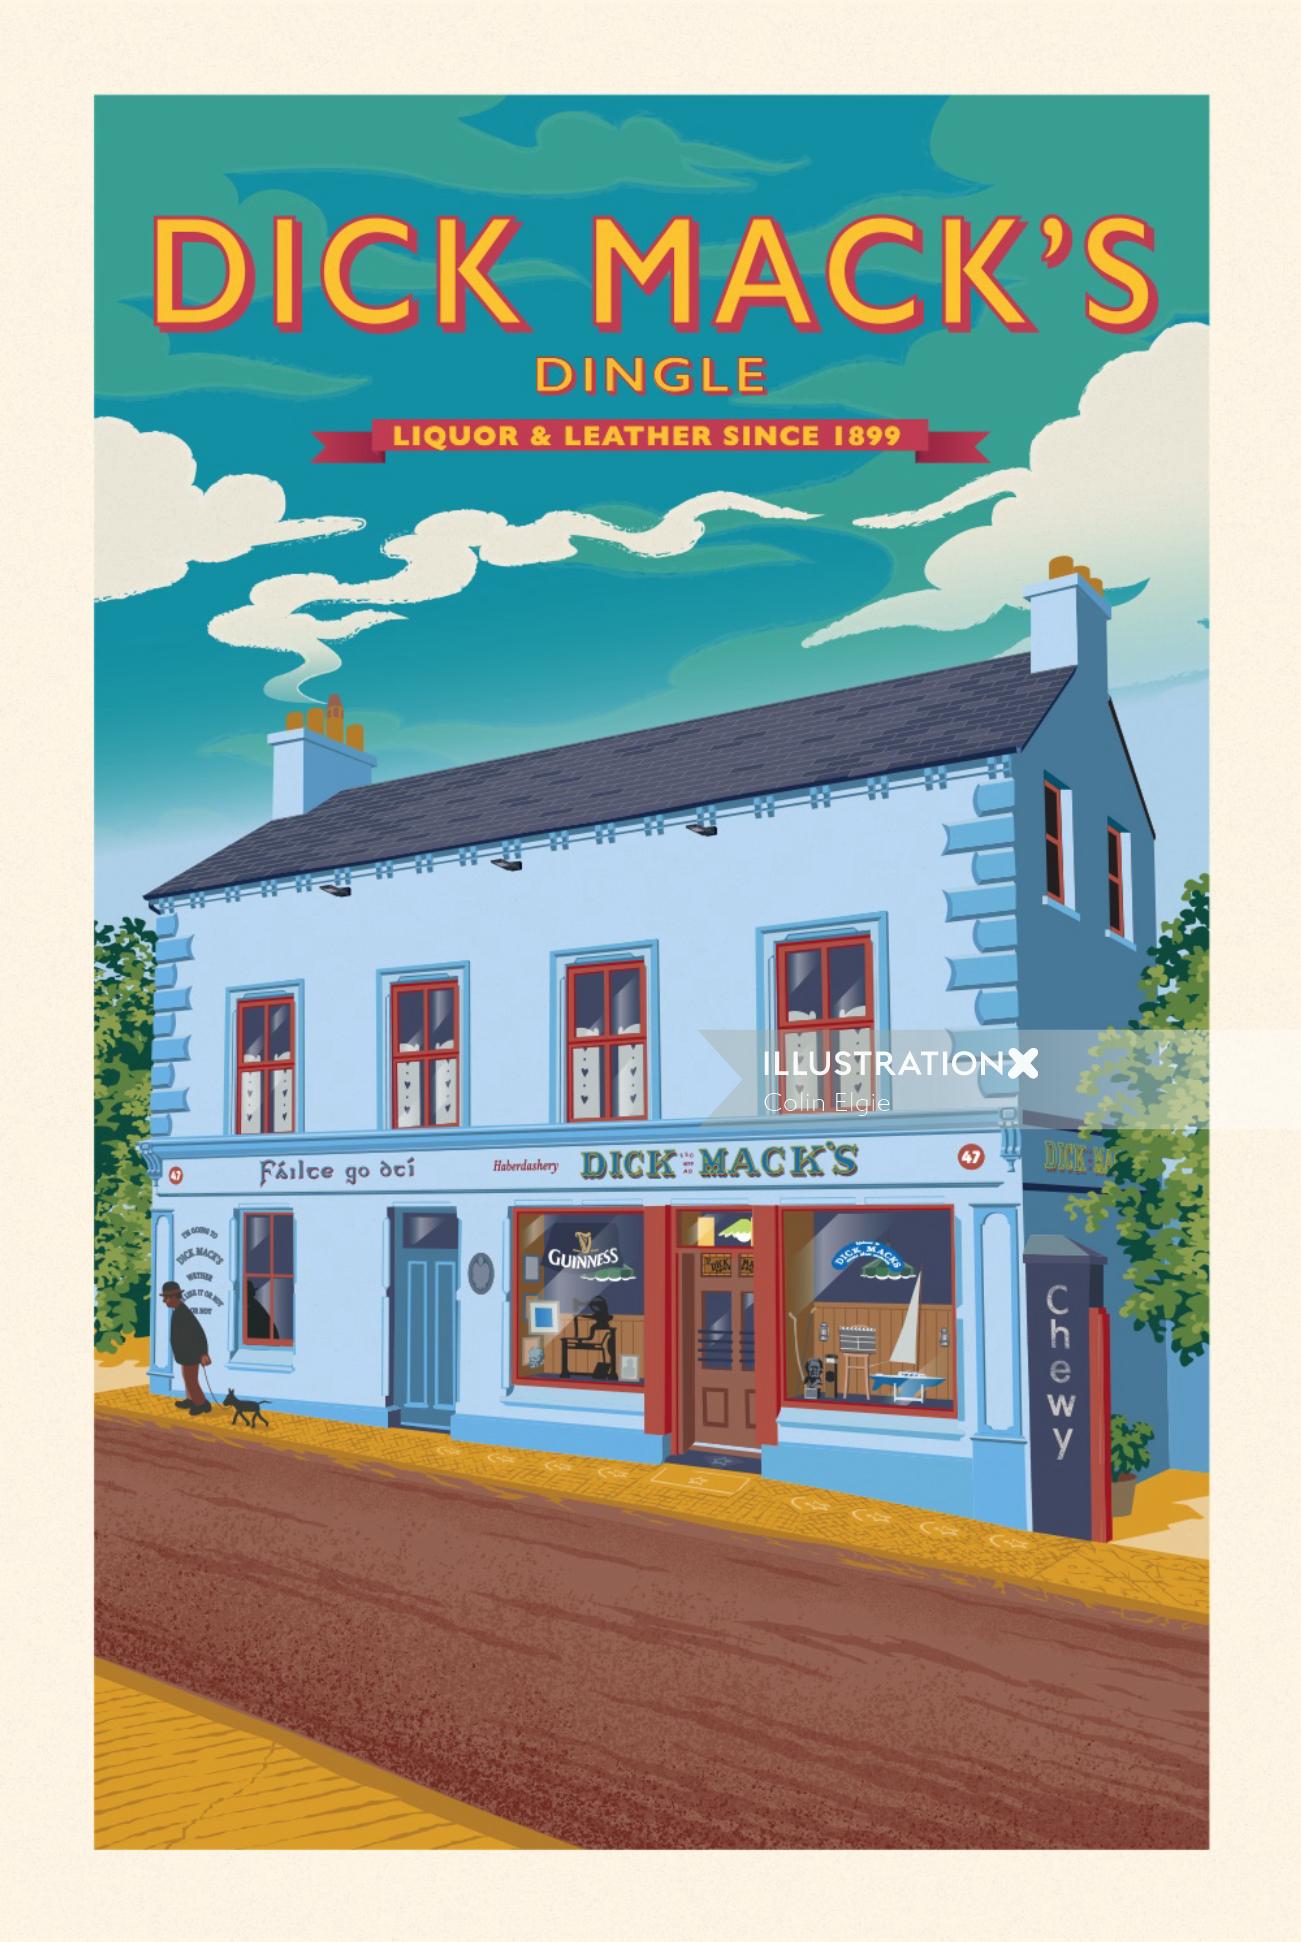 Ilustración del cartel que muestra un famoso pub antiguo en Dingle